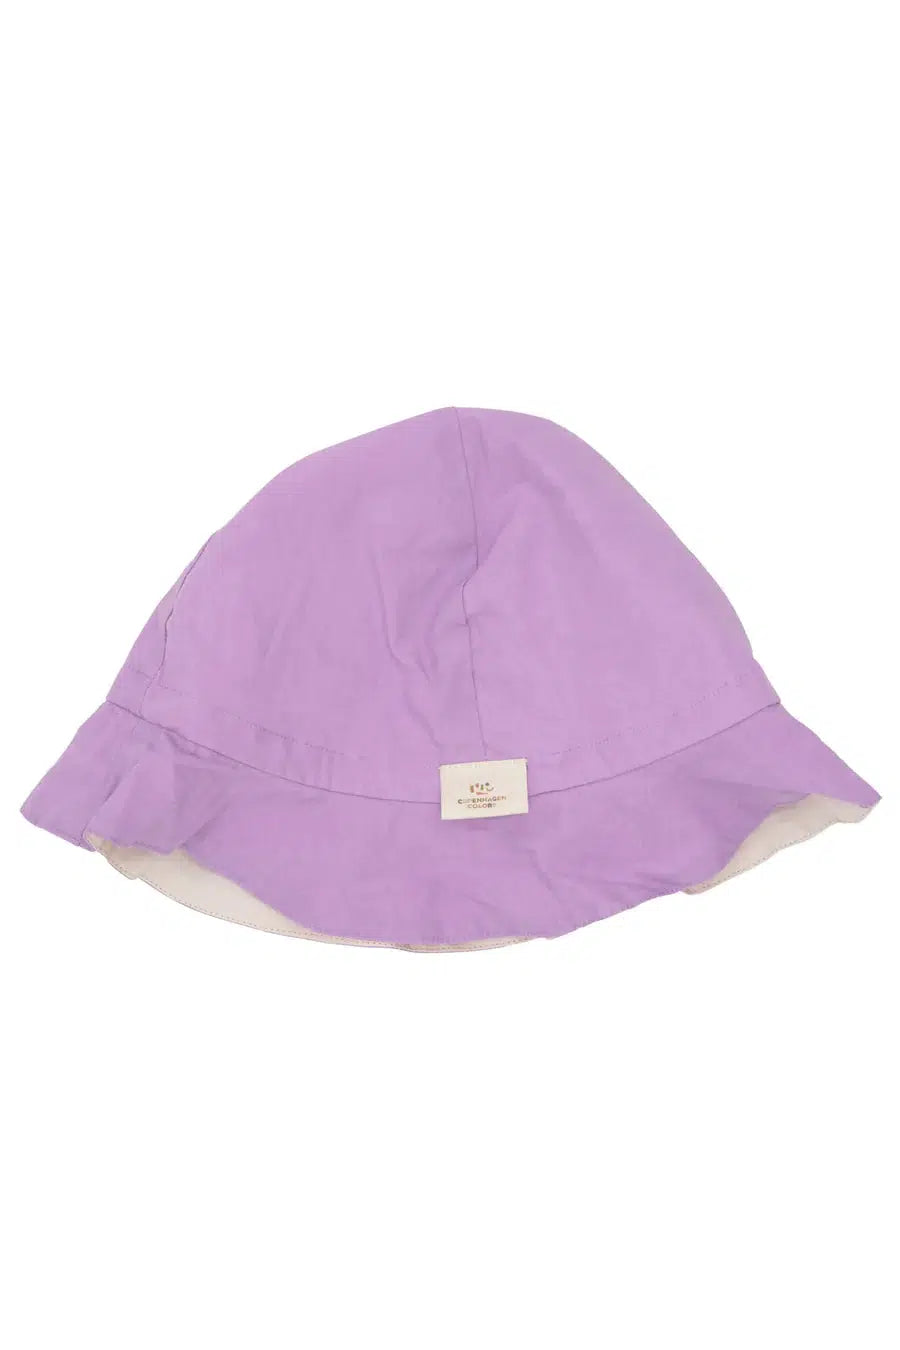 Copenhagen Colors - Økologisk Vendbar Sommer Hat - Soft Pink Lilac - Solhat - MamaMilla